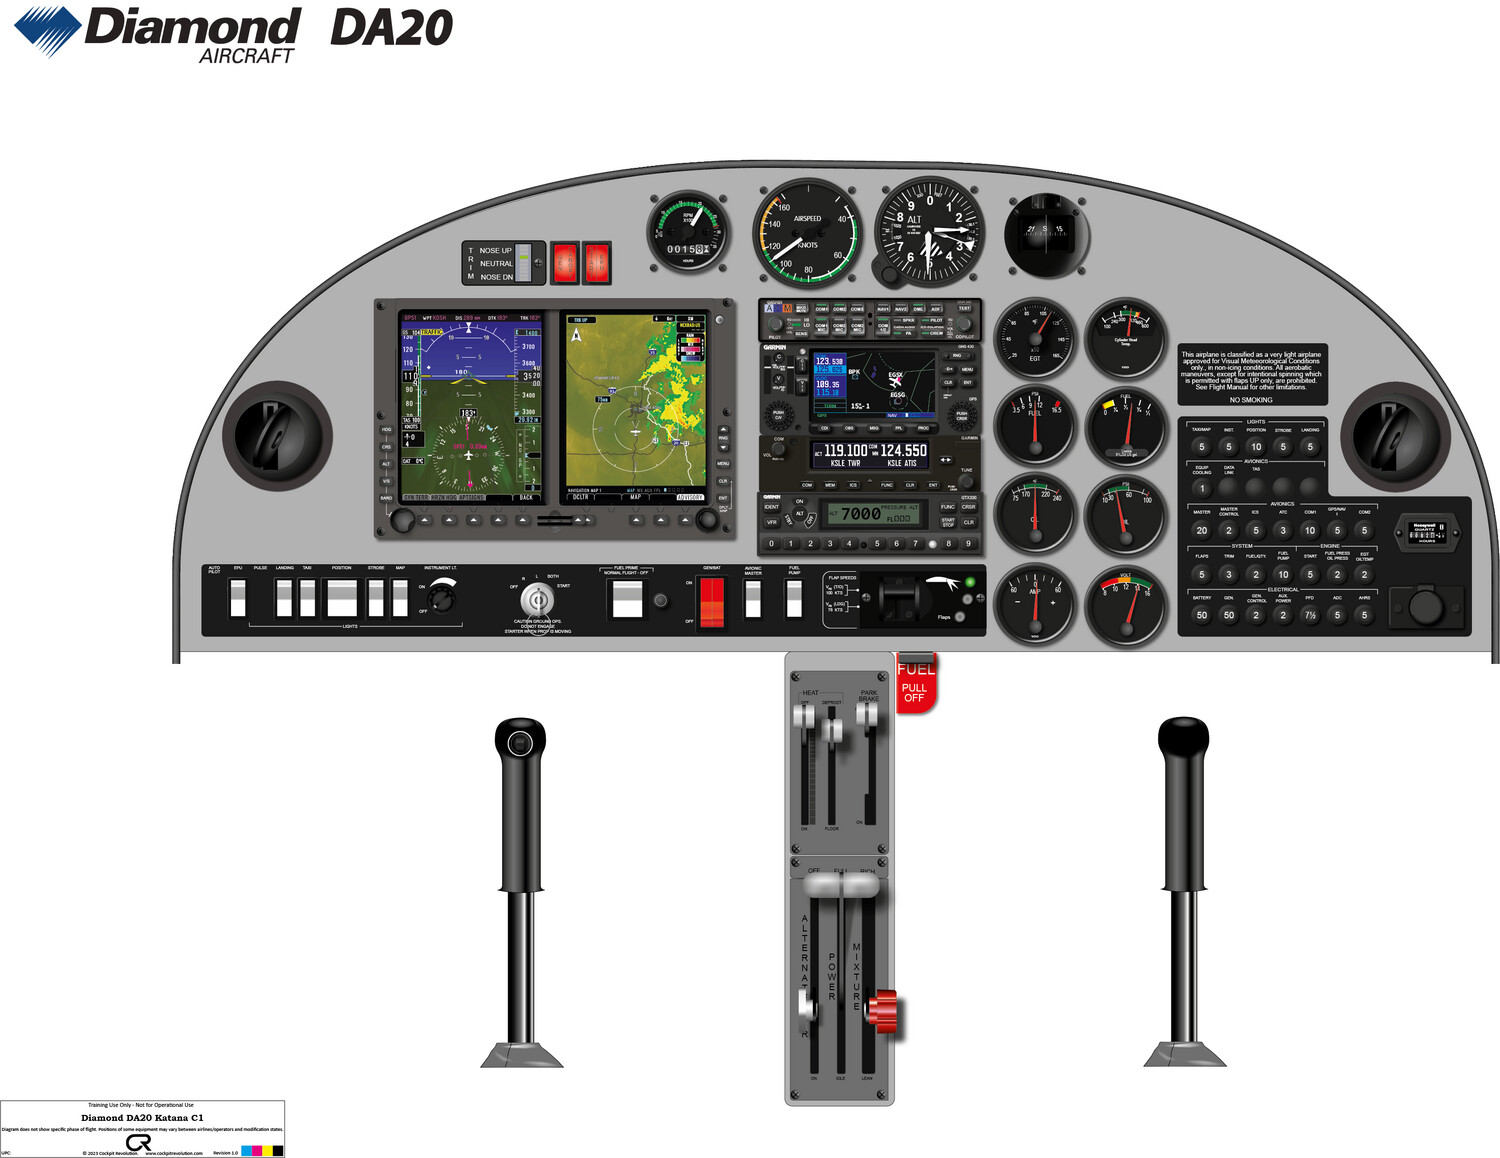 Diamond DA20 C1 Katana Garmin Avionics guide